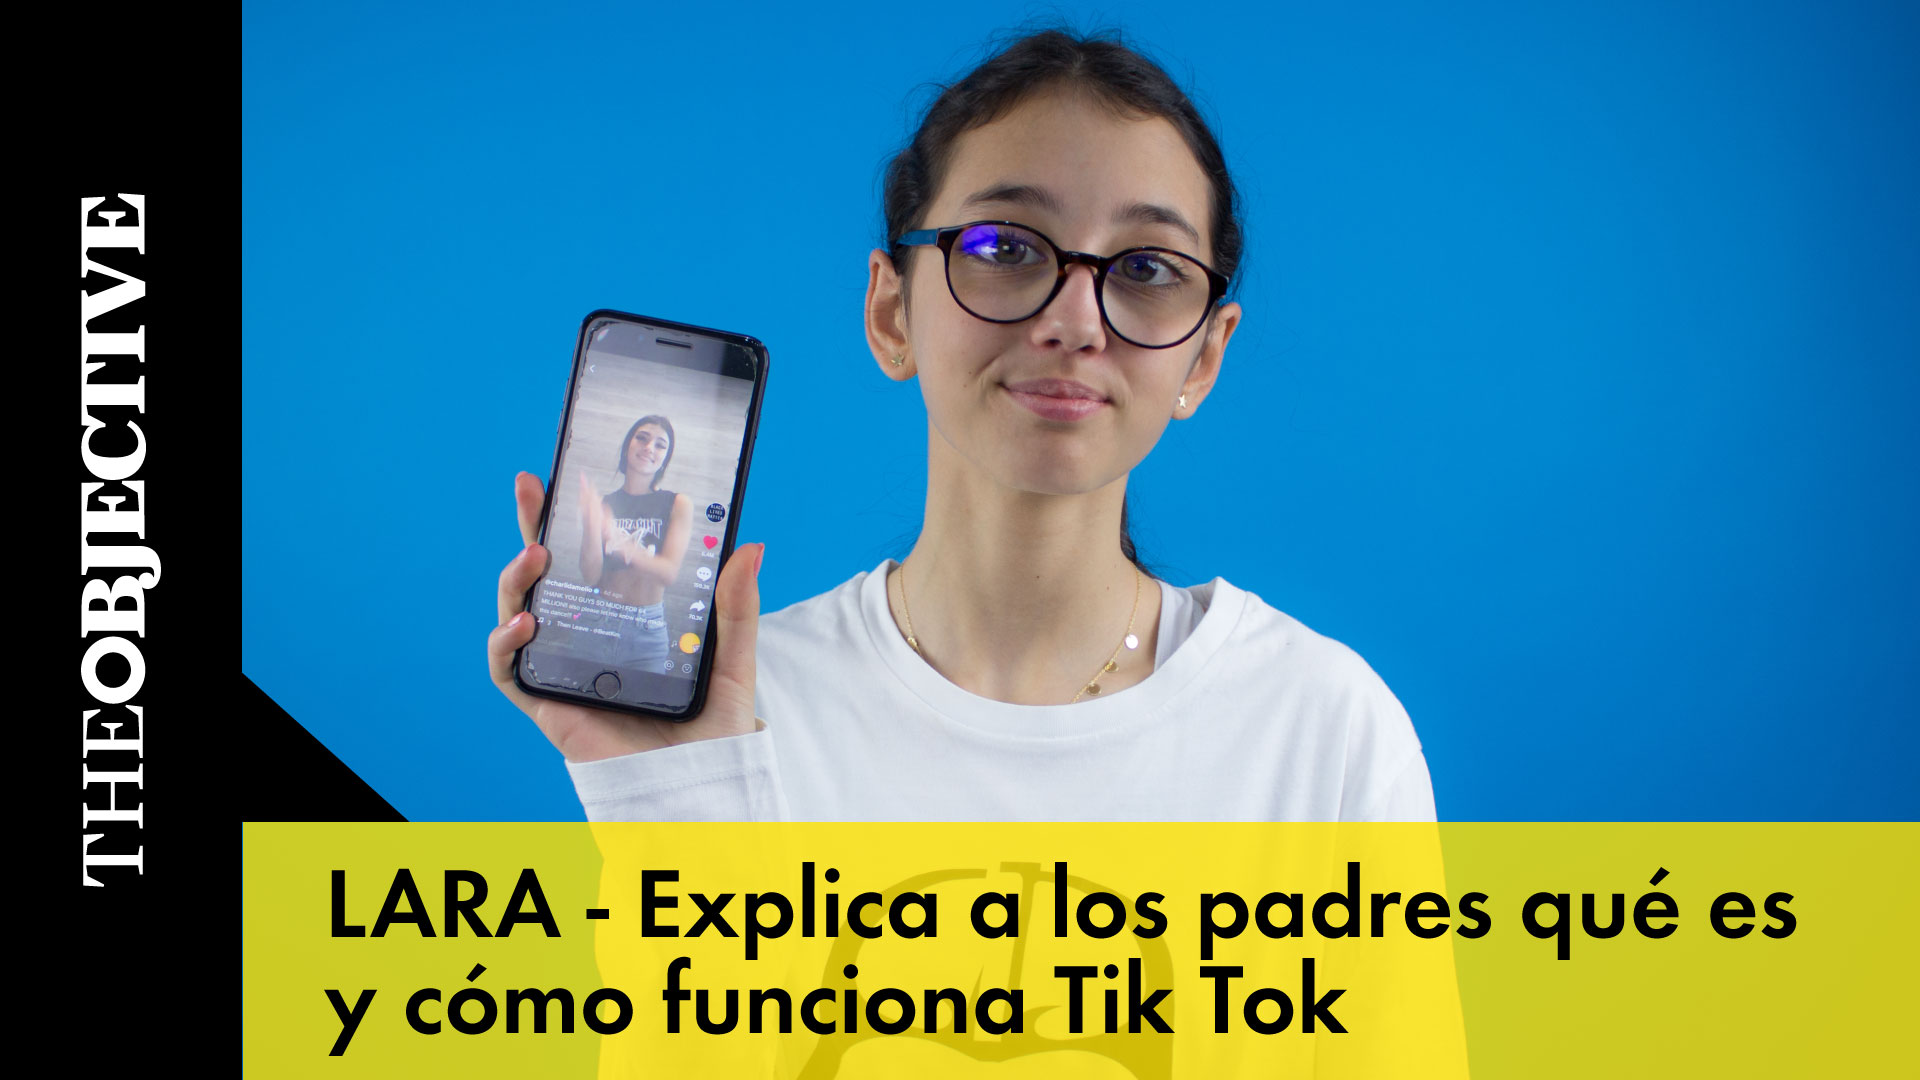 Lara nos explica qué es y cómo funciona Tik Tok